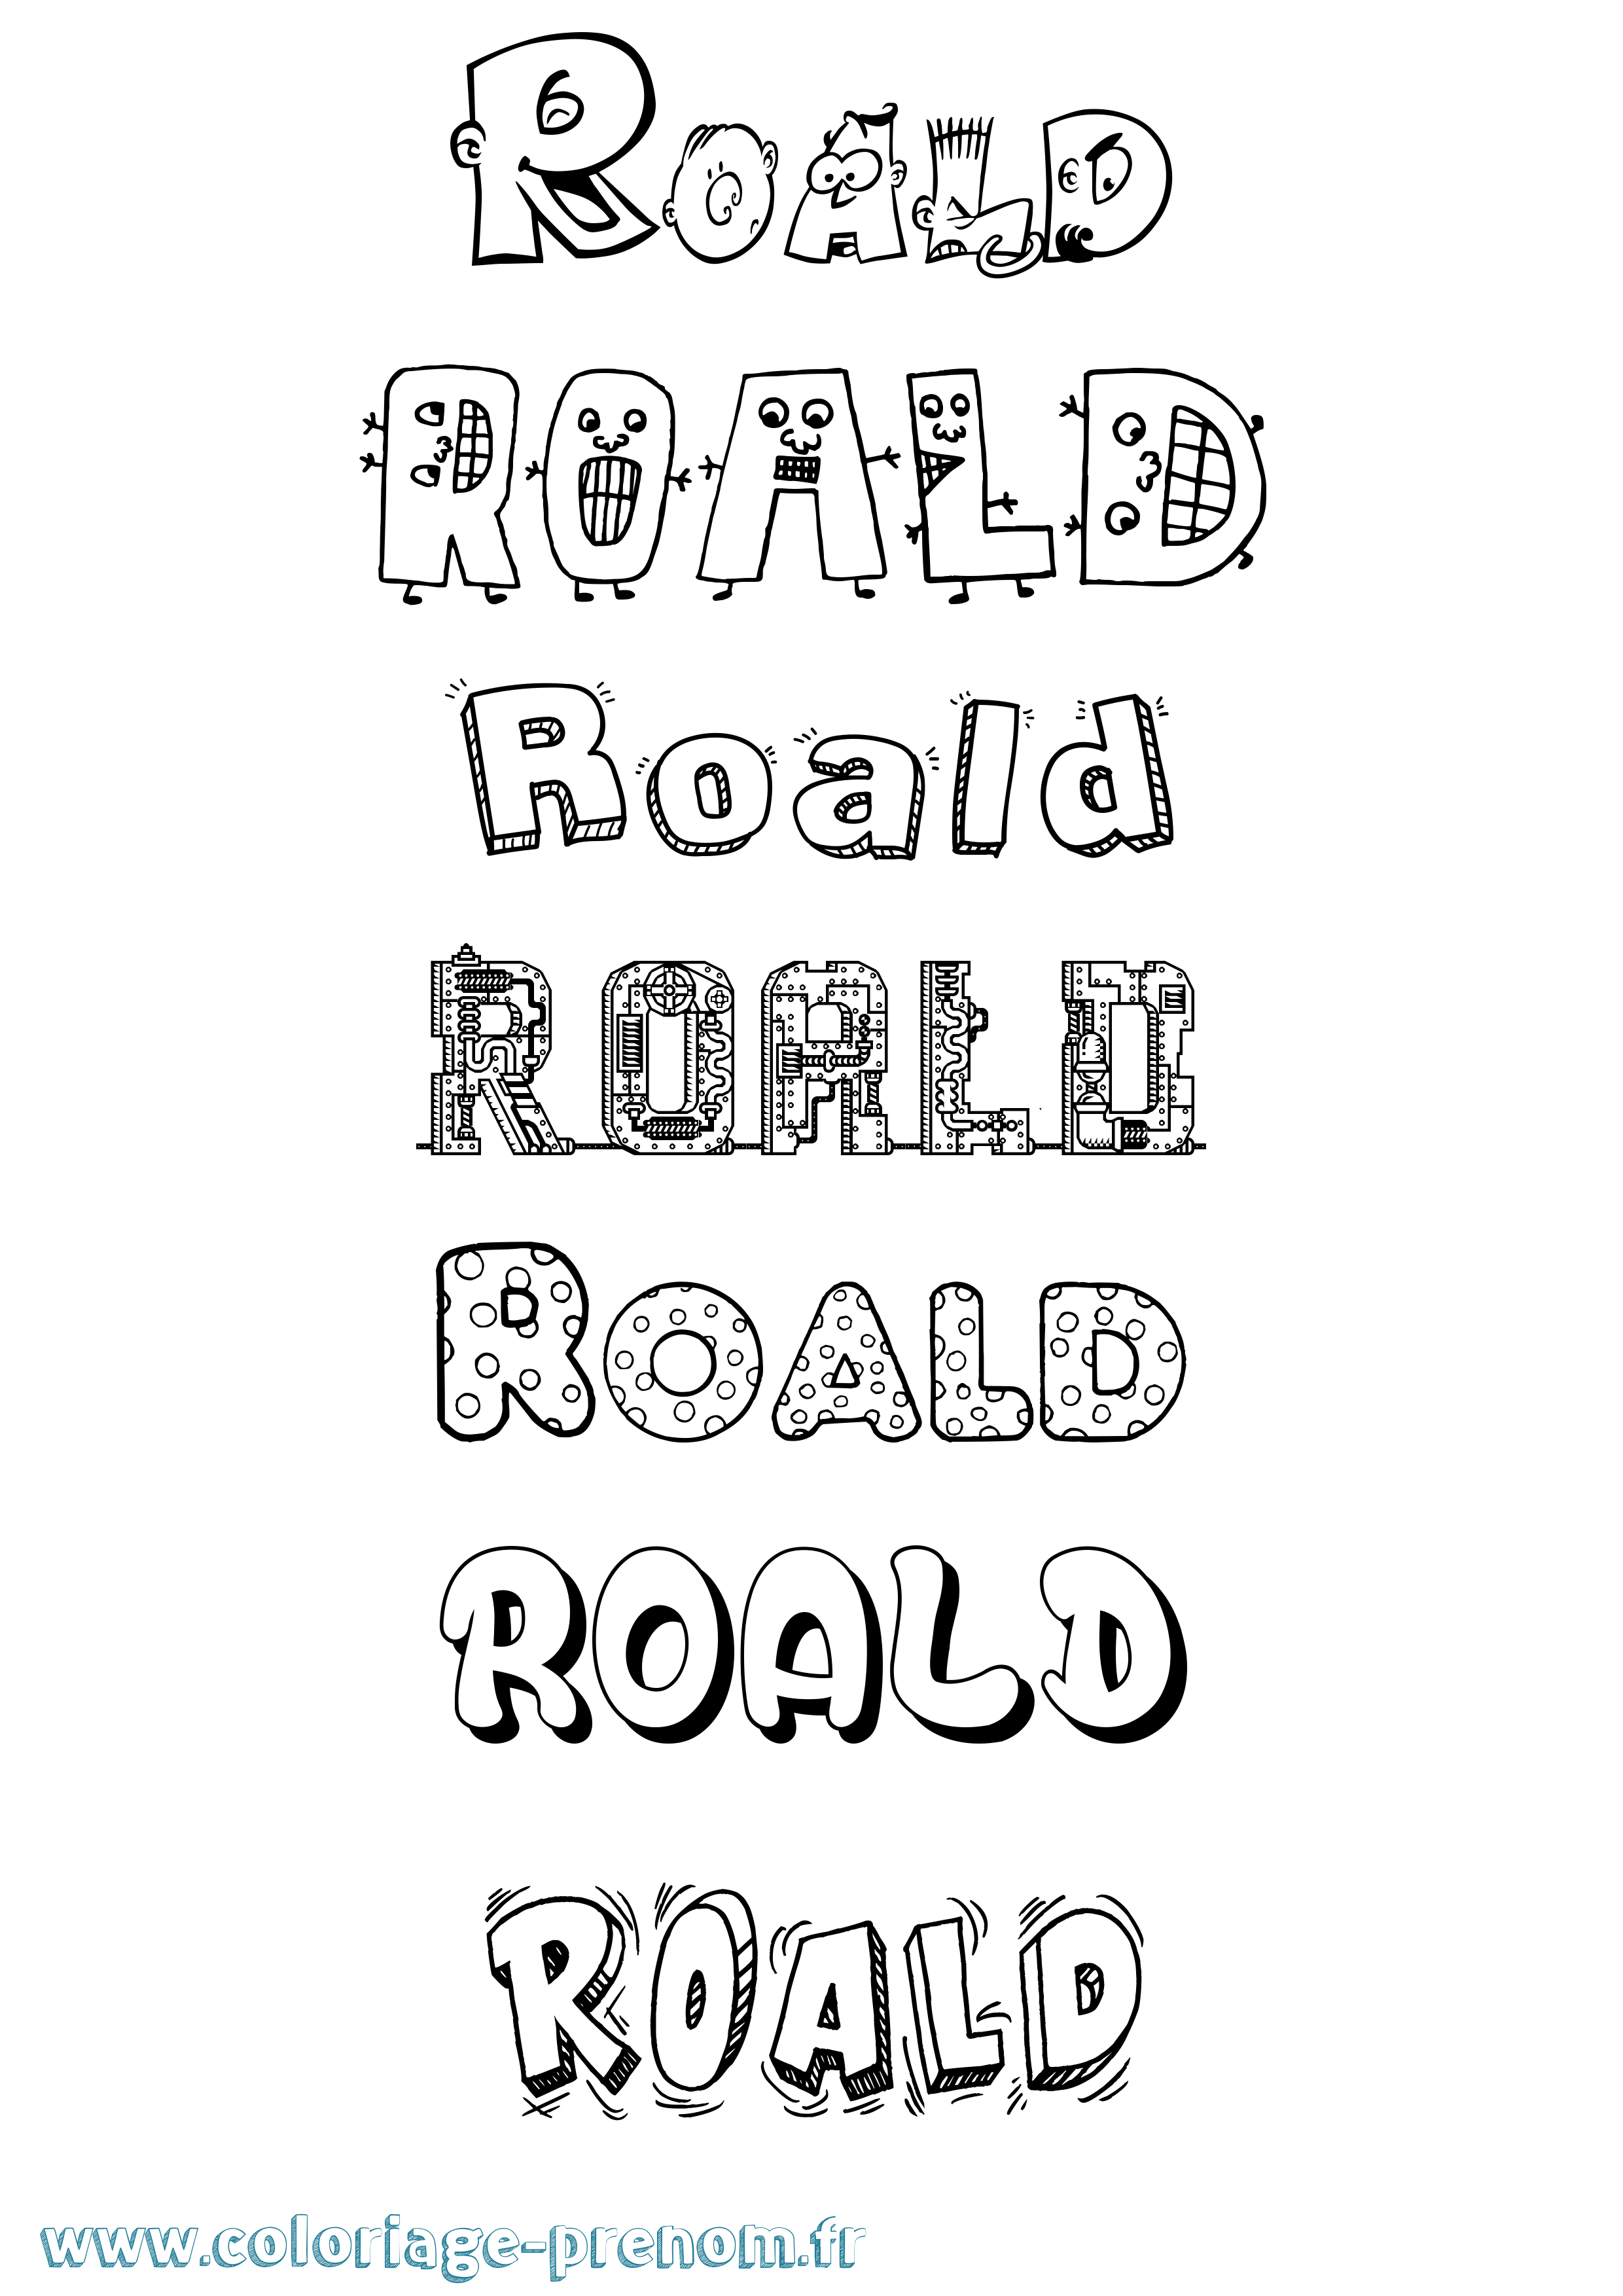 Coloriage prénom Roald Fun